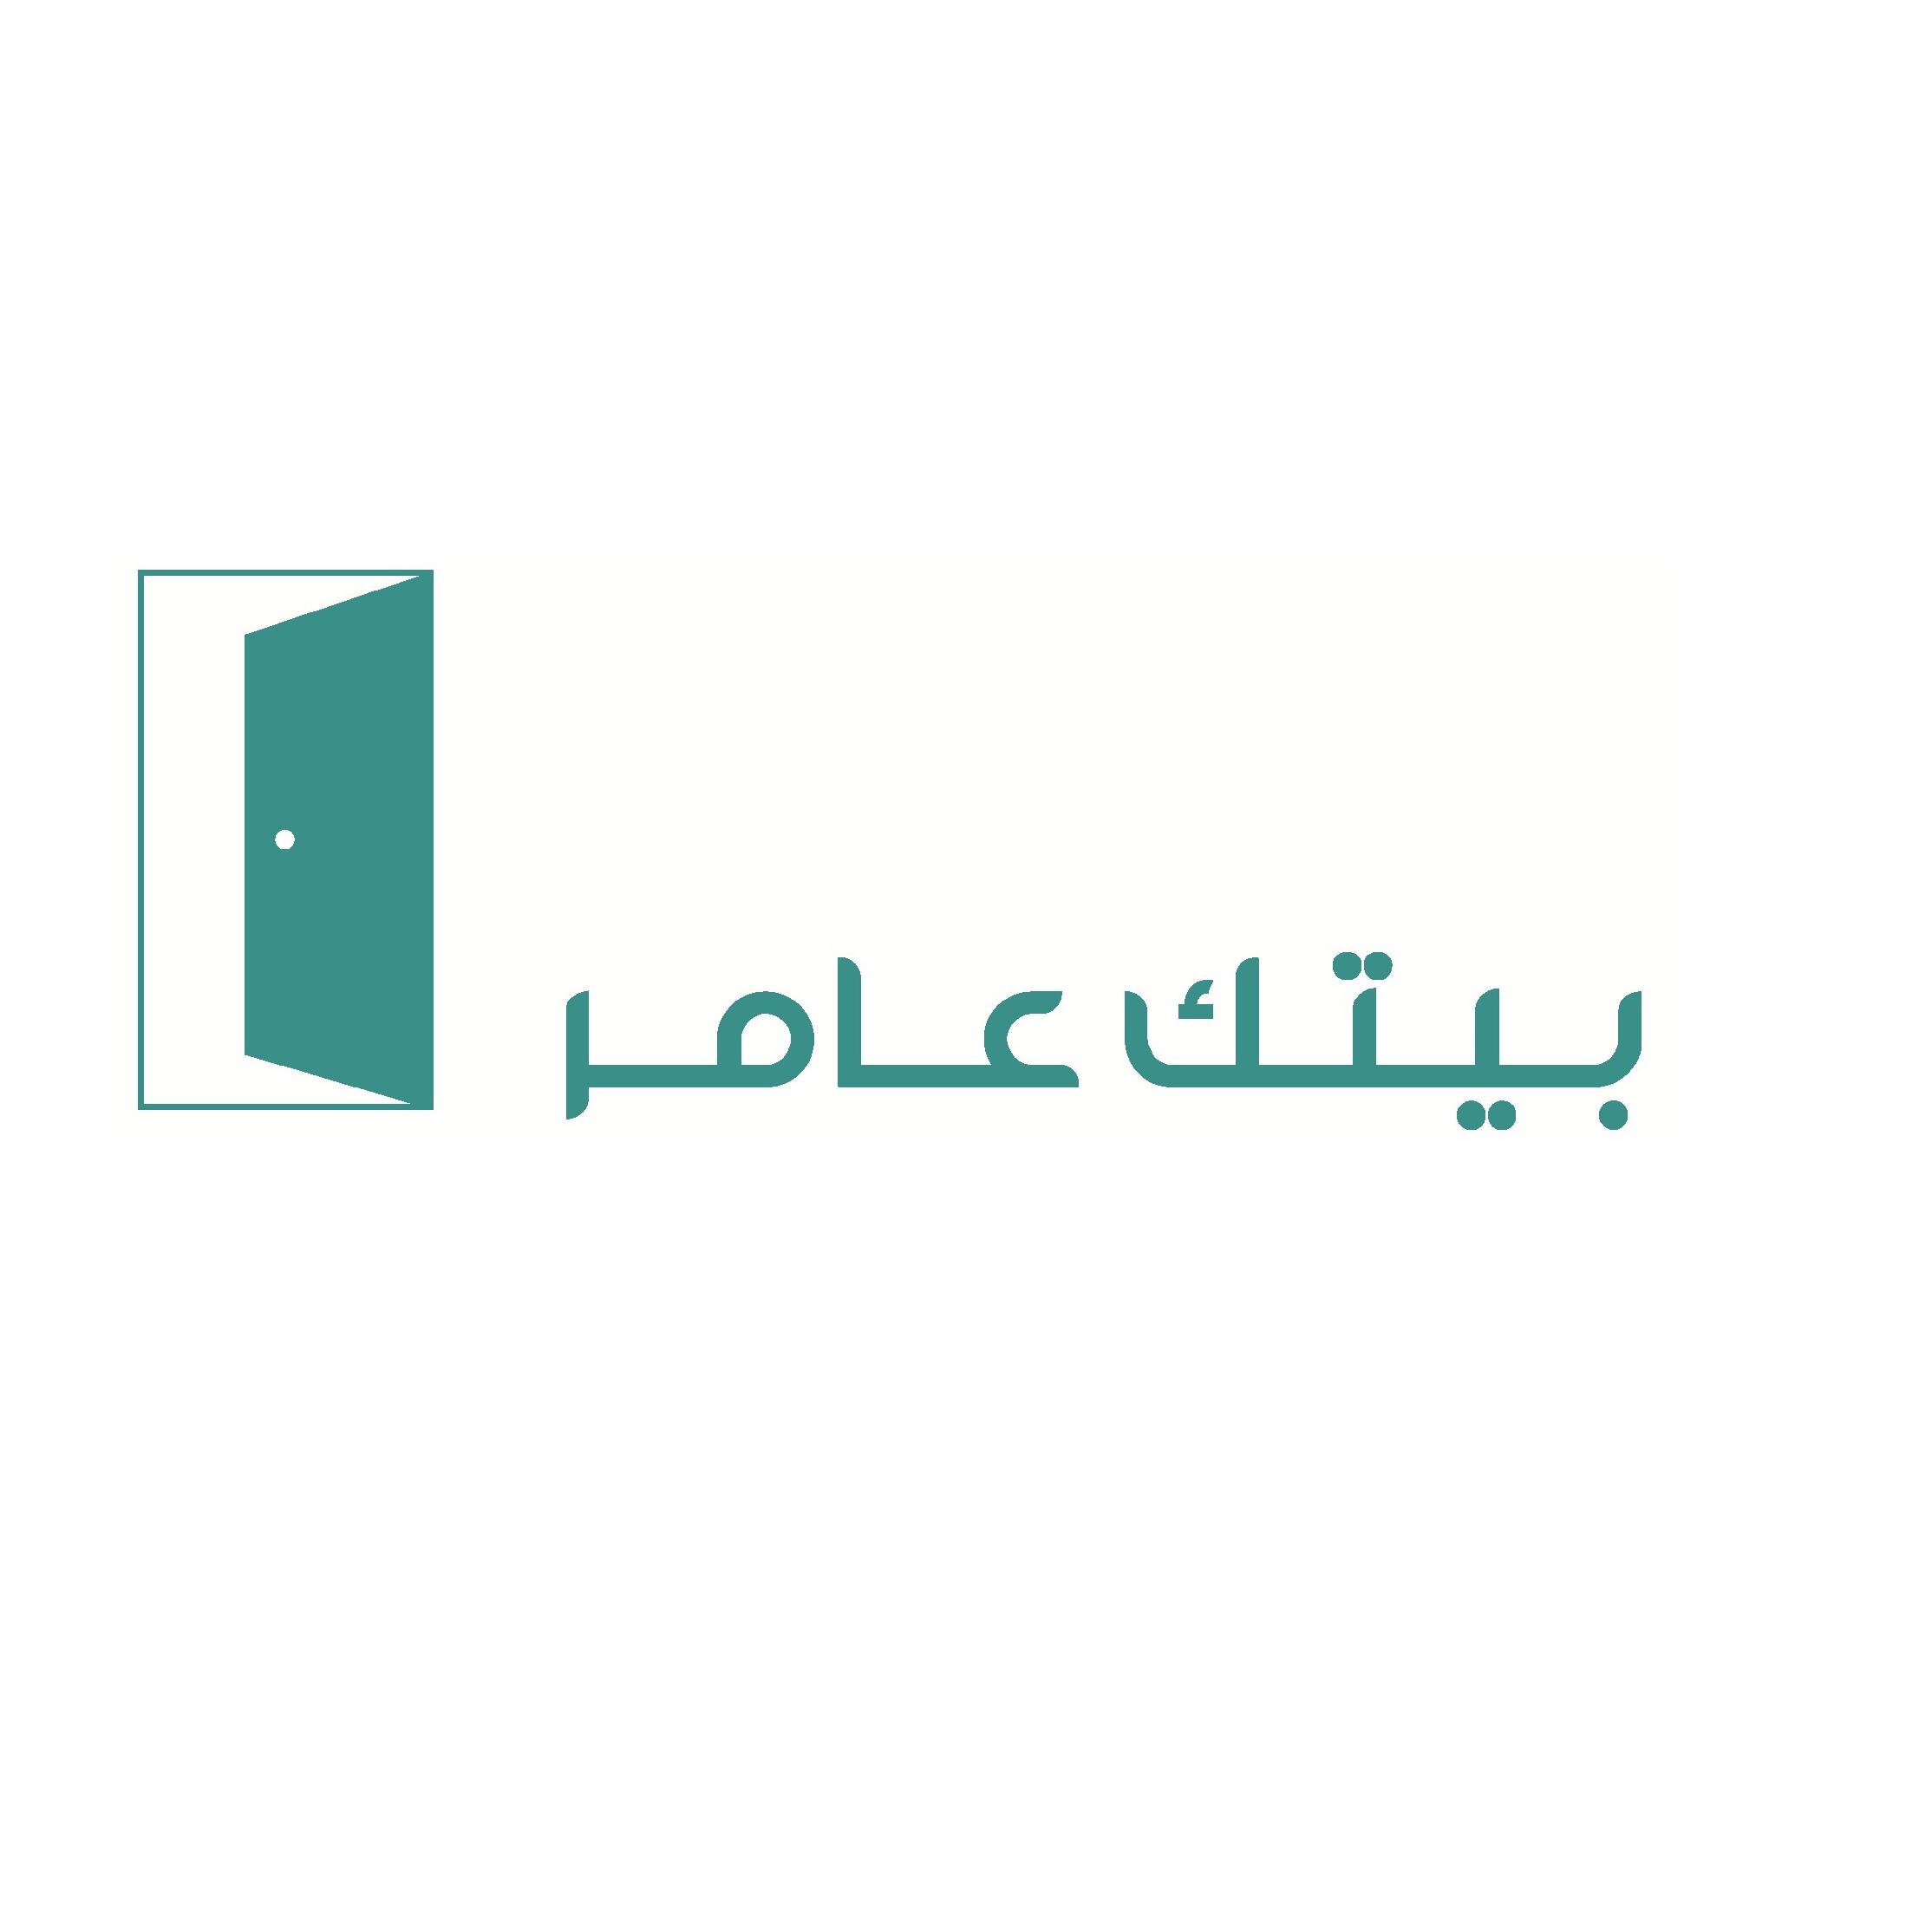 المشروع الوطني للتوعية الهندسية لبناء وشراء المساكن #بيتك_عامر تحت إشراف الهيئة السعودية للمهندسين https://t.co/YoaQqGrYxR